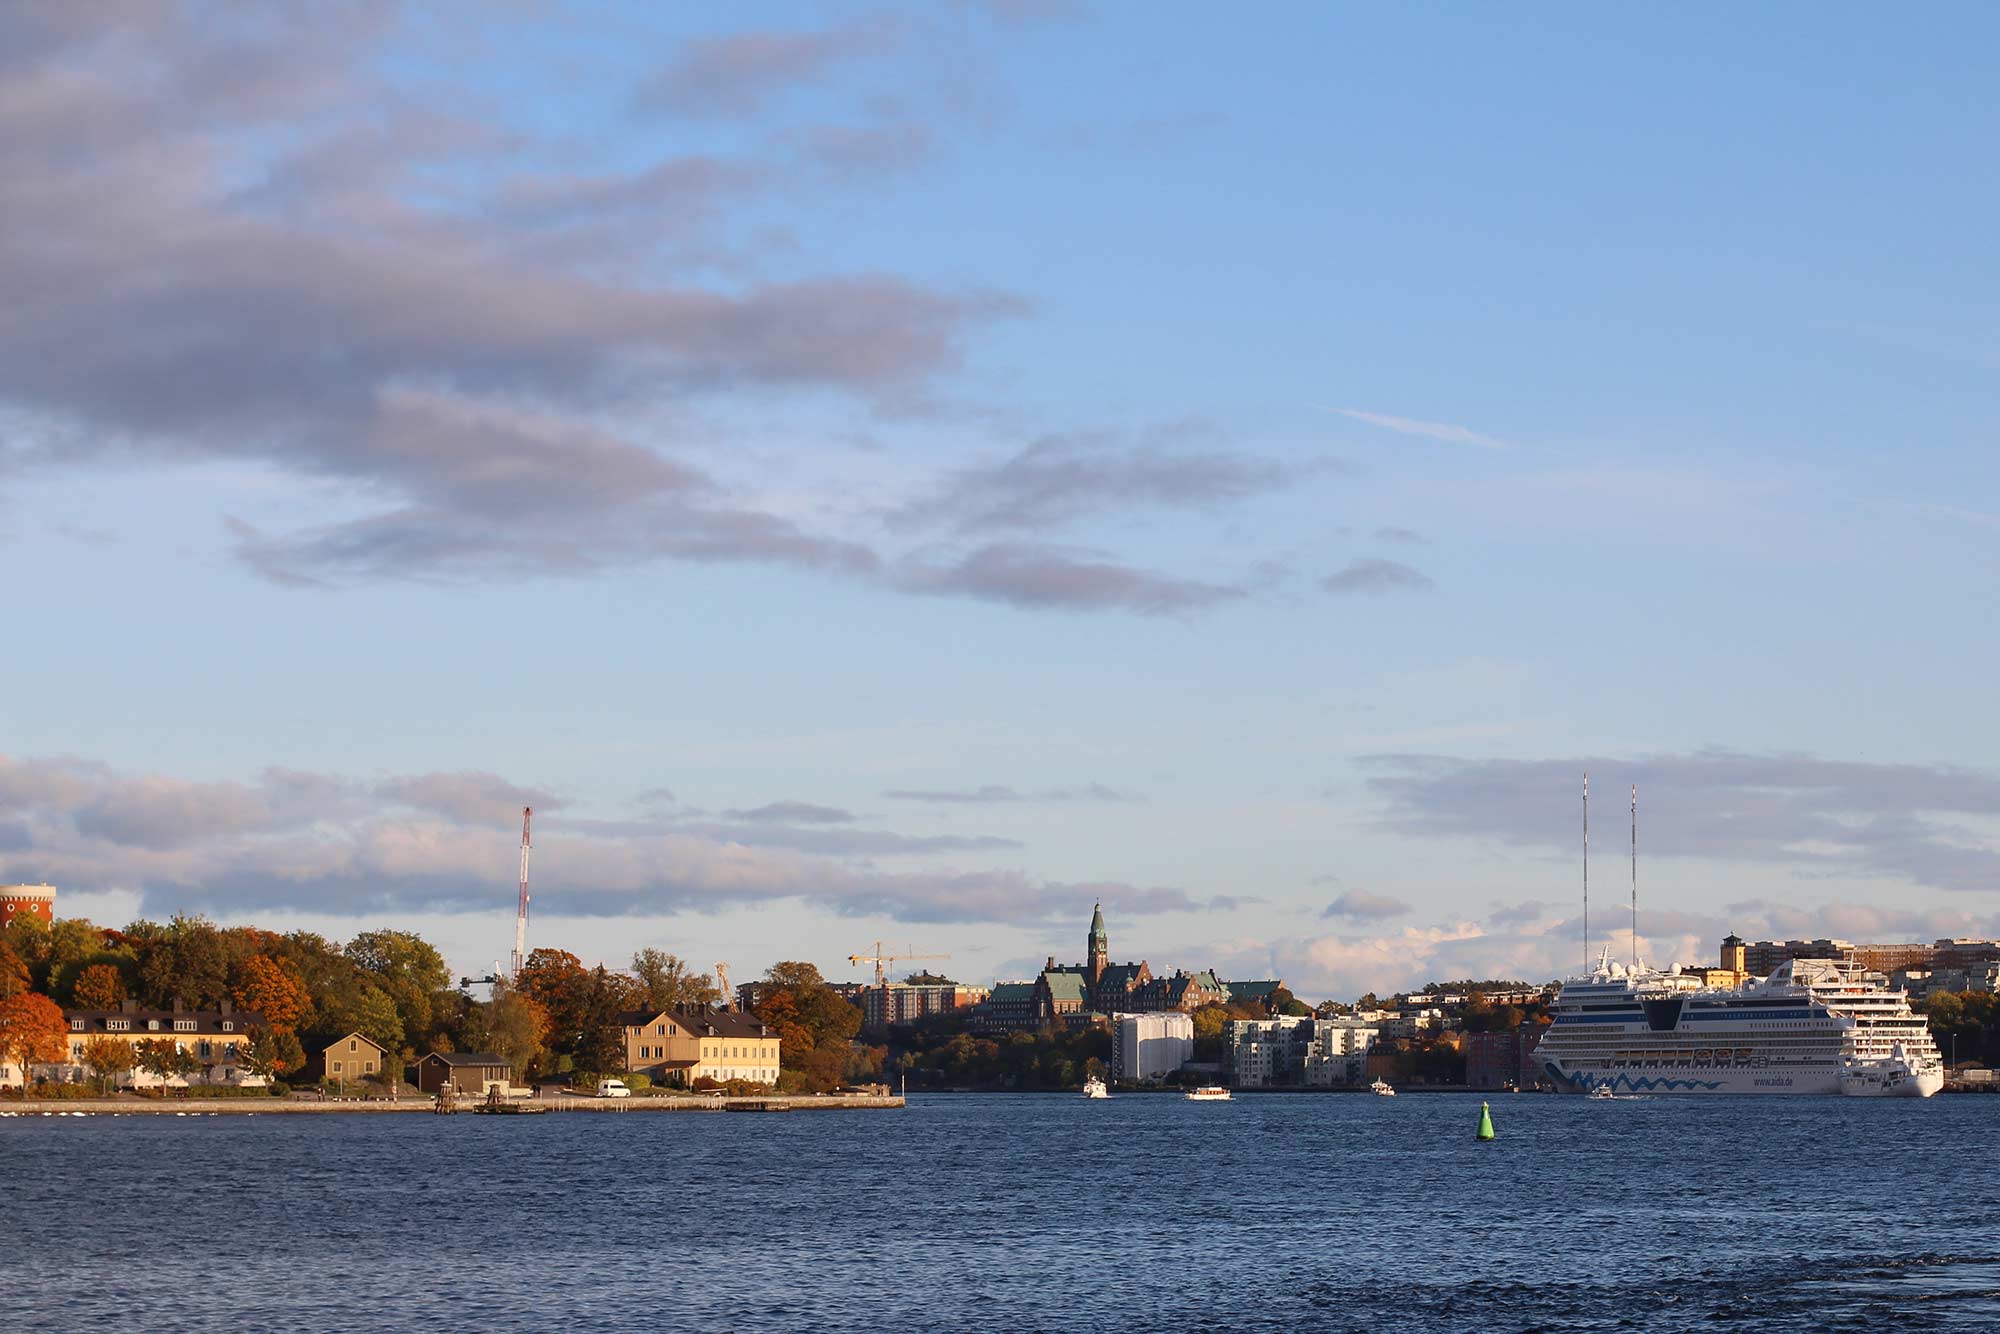 Паромы, прибывающие в Стокгольм, в основном причаливают в порту Стадсгордскайен на острове Сёдермальм. Отсюда до главных достопримечательностей можно дойти пешком